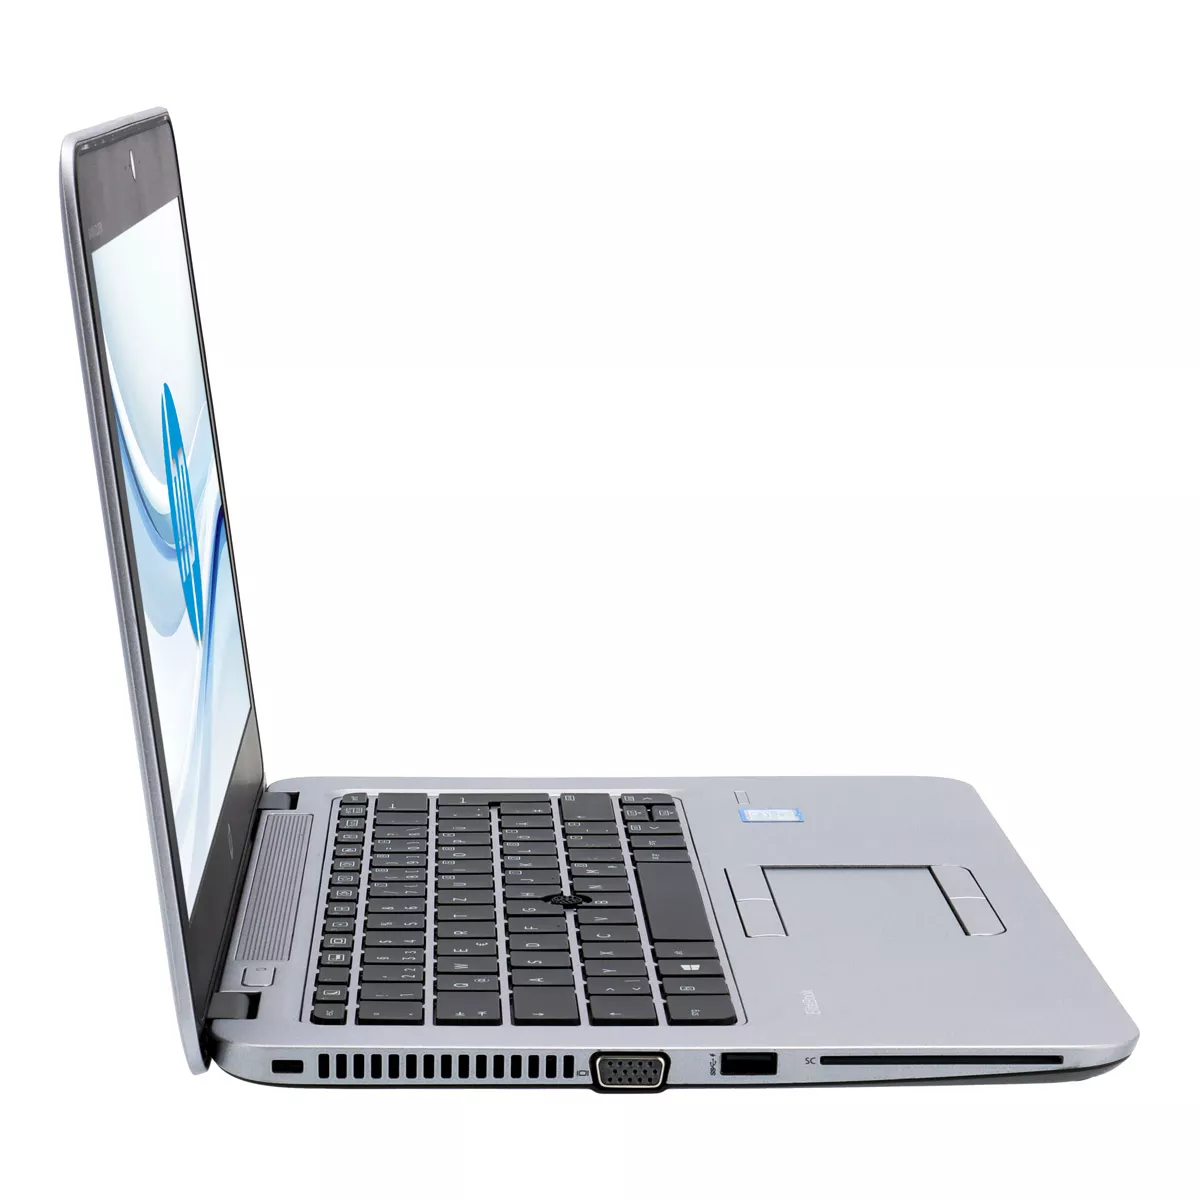 HP EliteBook 820 G4 Core i5 7300U Full-HD 240 GB M.2 SSD Webcam A